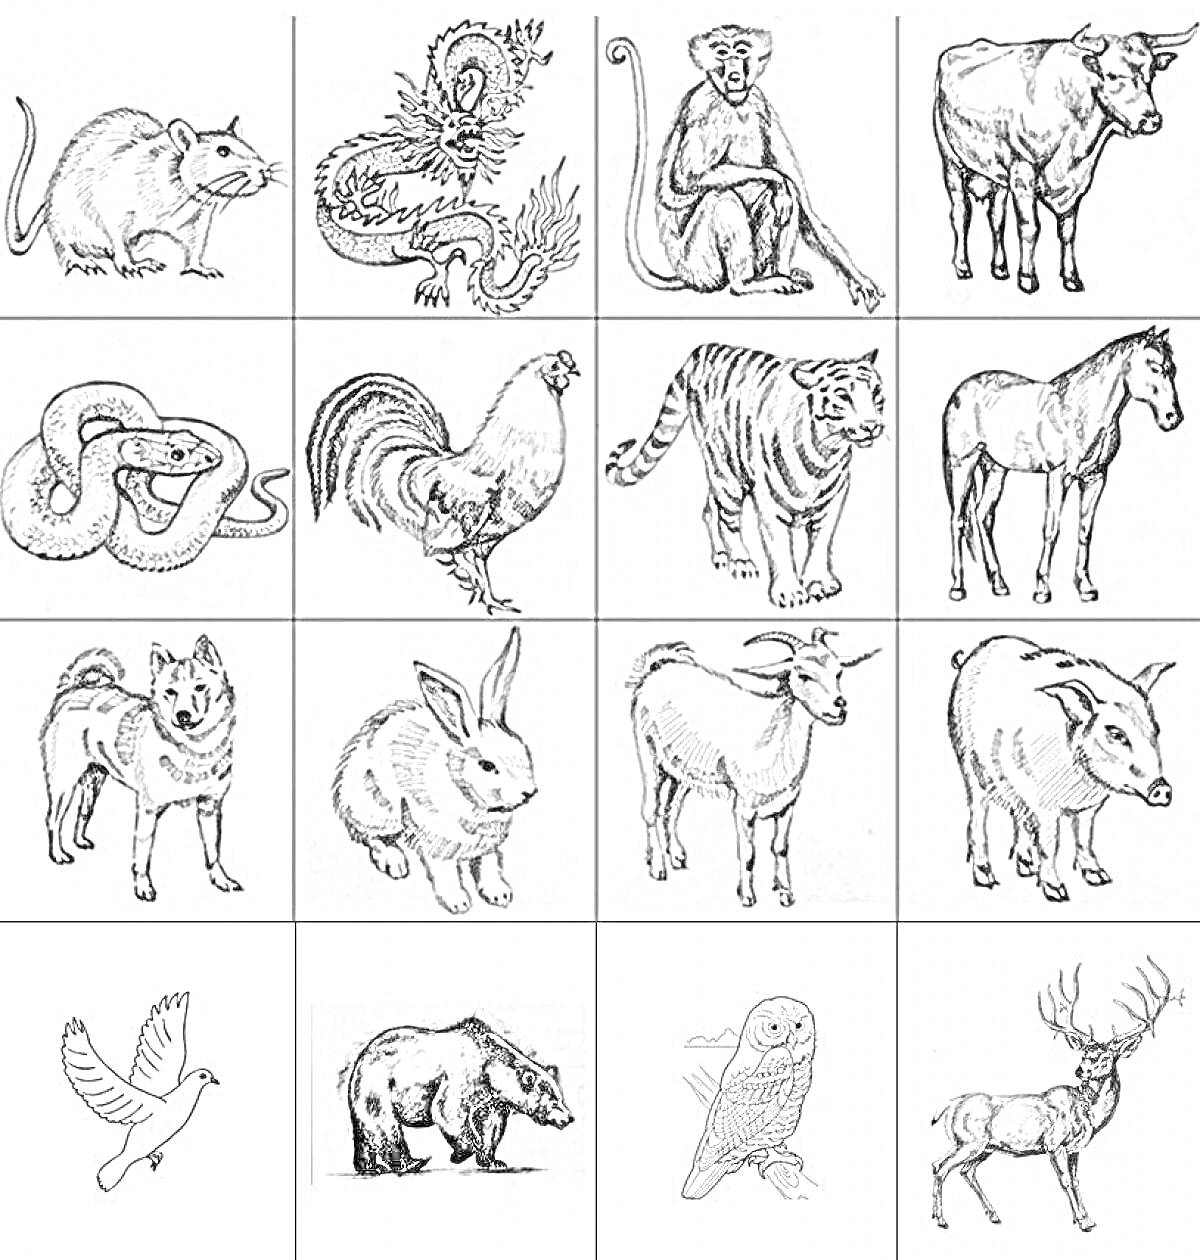 Раскраска Восточный гороскоп: крыса, дракон, обезьяна, бык, змея, петух, тигр, лошадь, пес, кролик, овца, коза, голубь, медведь, сова, олень